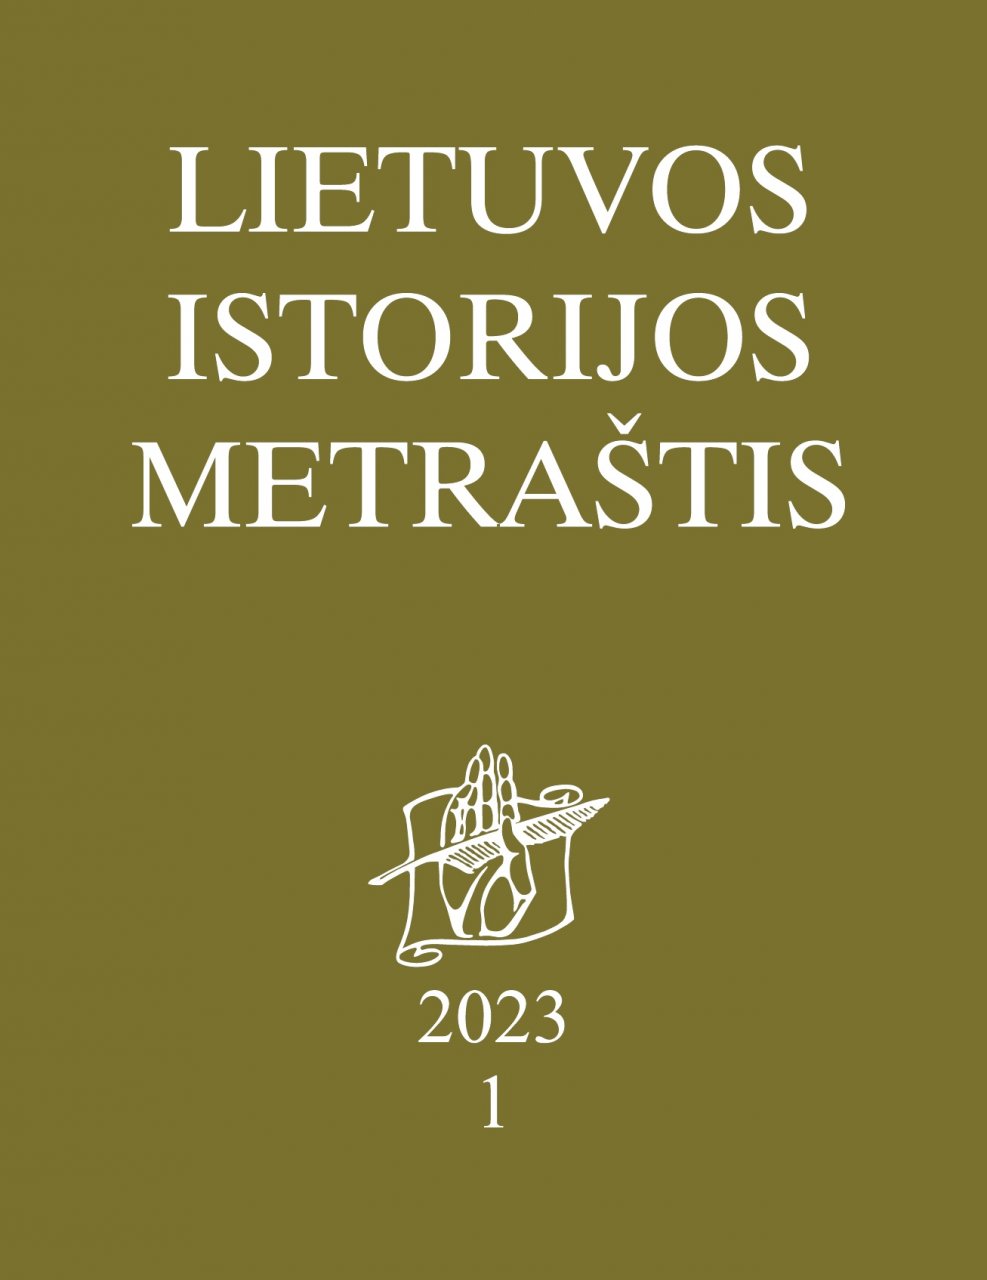 Lietuvos istorijos metraštis 2023 metai 1 